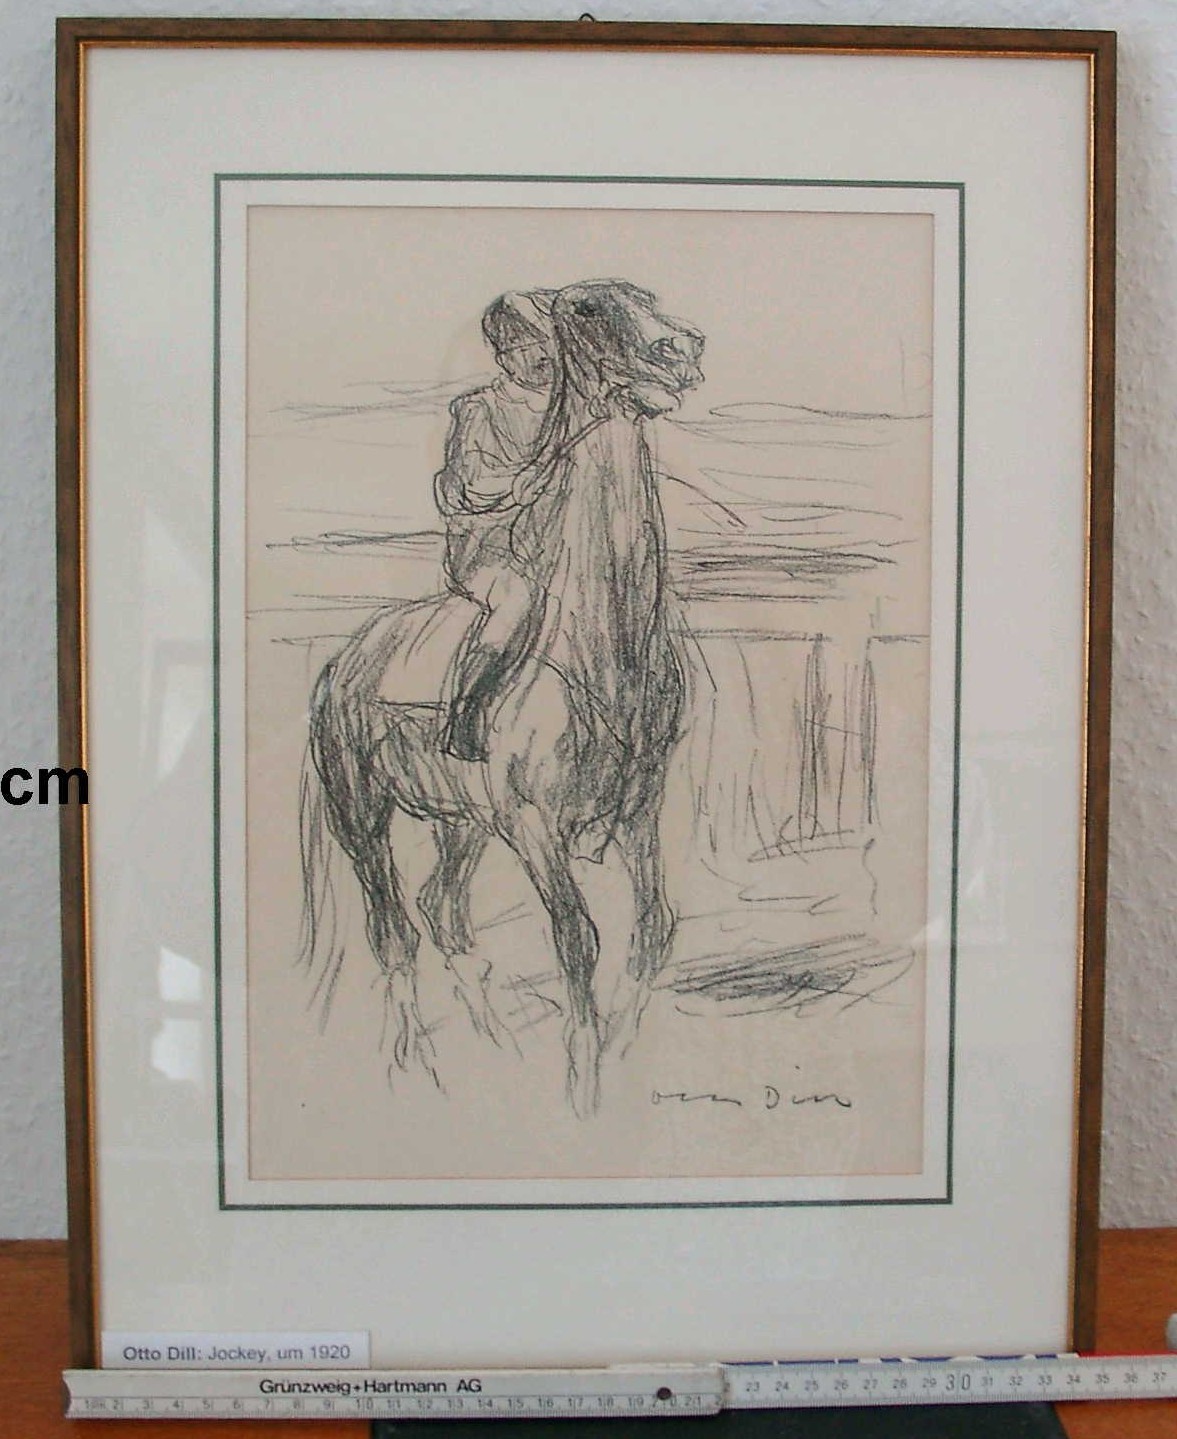 Bild; Zeichnung; Kreidezeichnung: "Jockey"; Otto Dill; um 1920 (Stadtmuseum Bad Dürkheim, Museumsgesellschaft Bad Dürkheim e.V. CC BY-NC-SA)